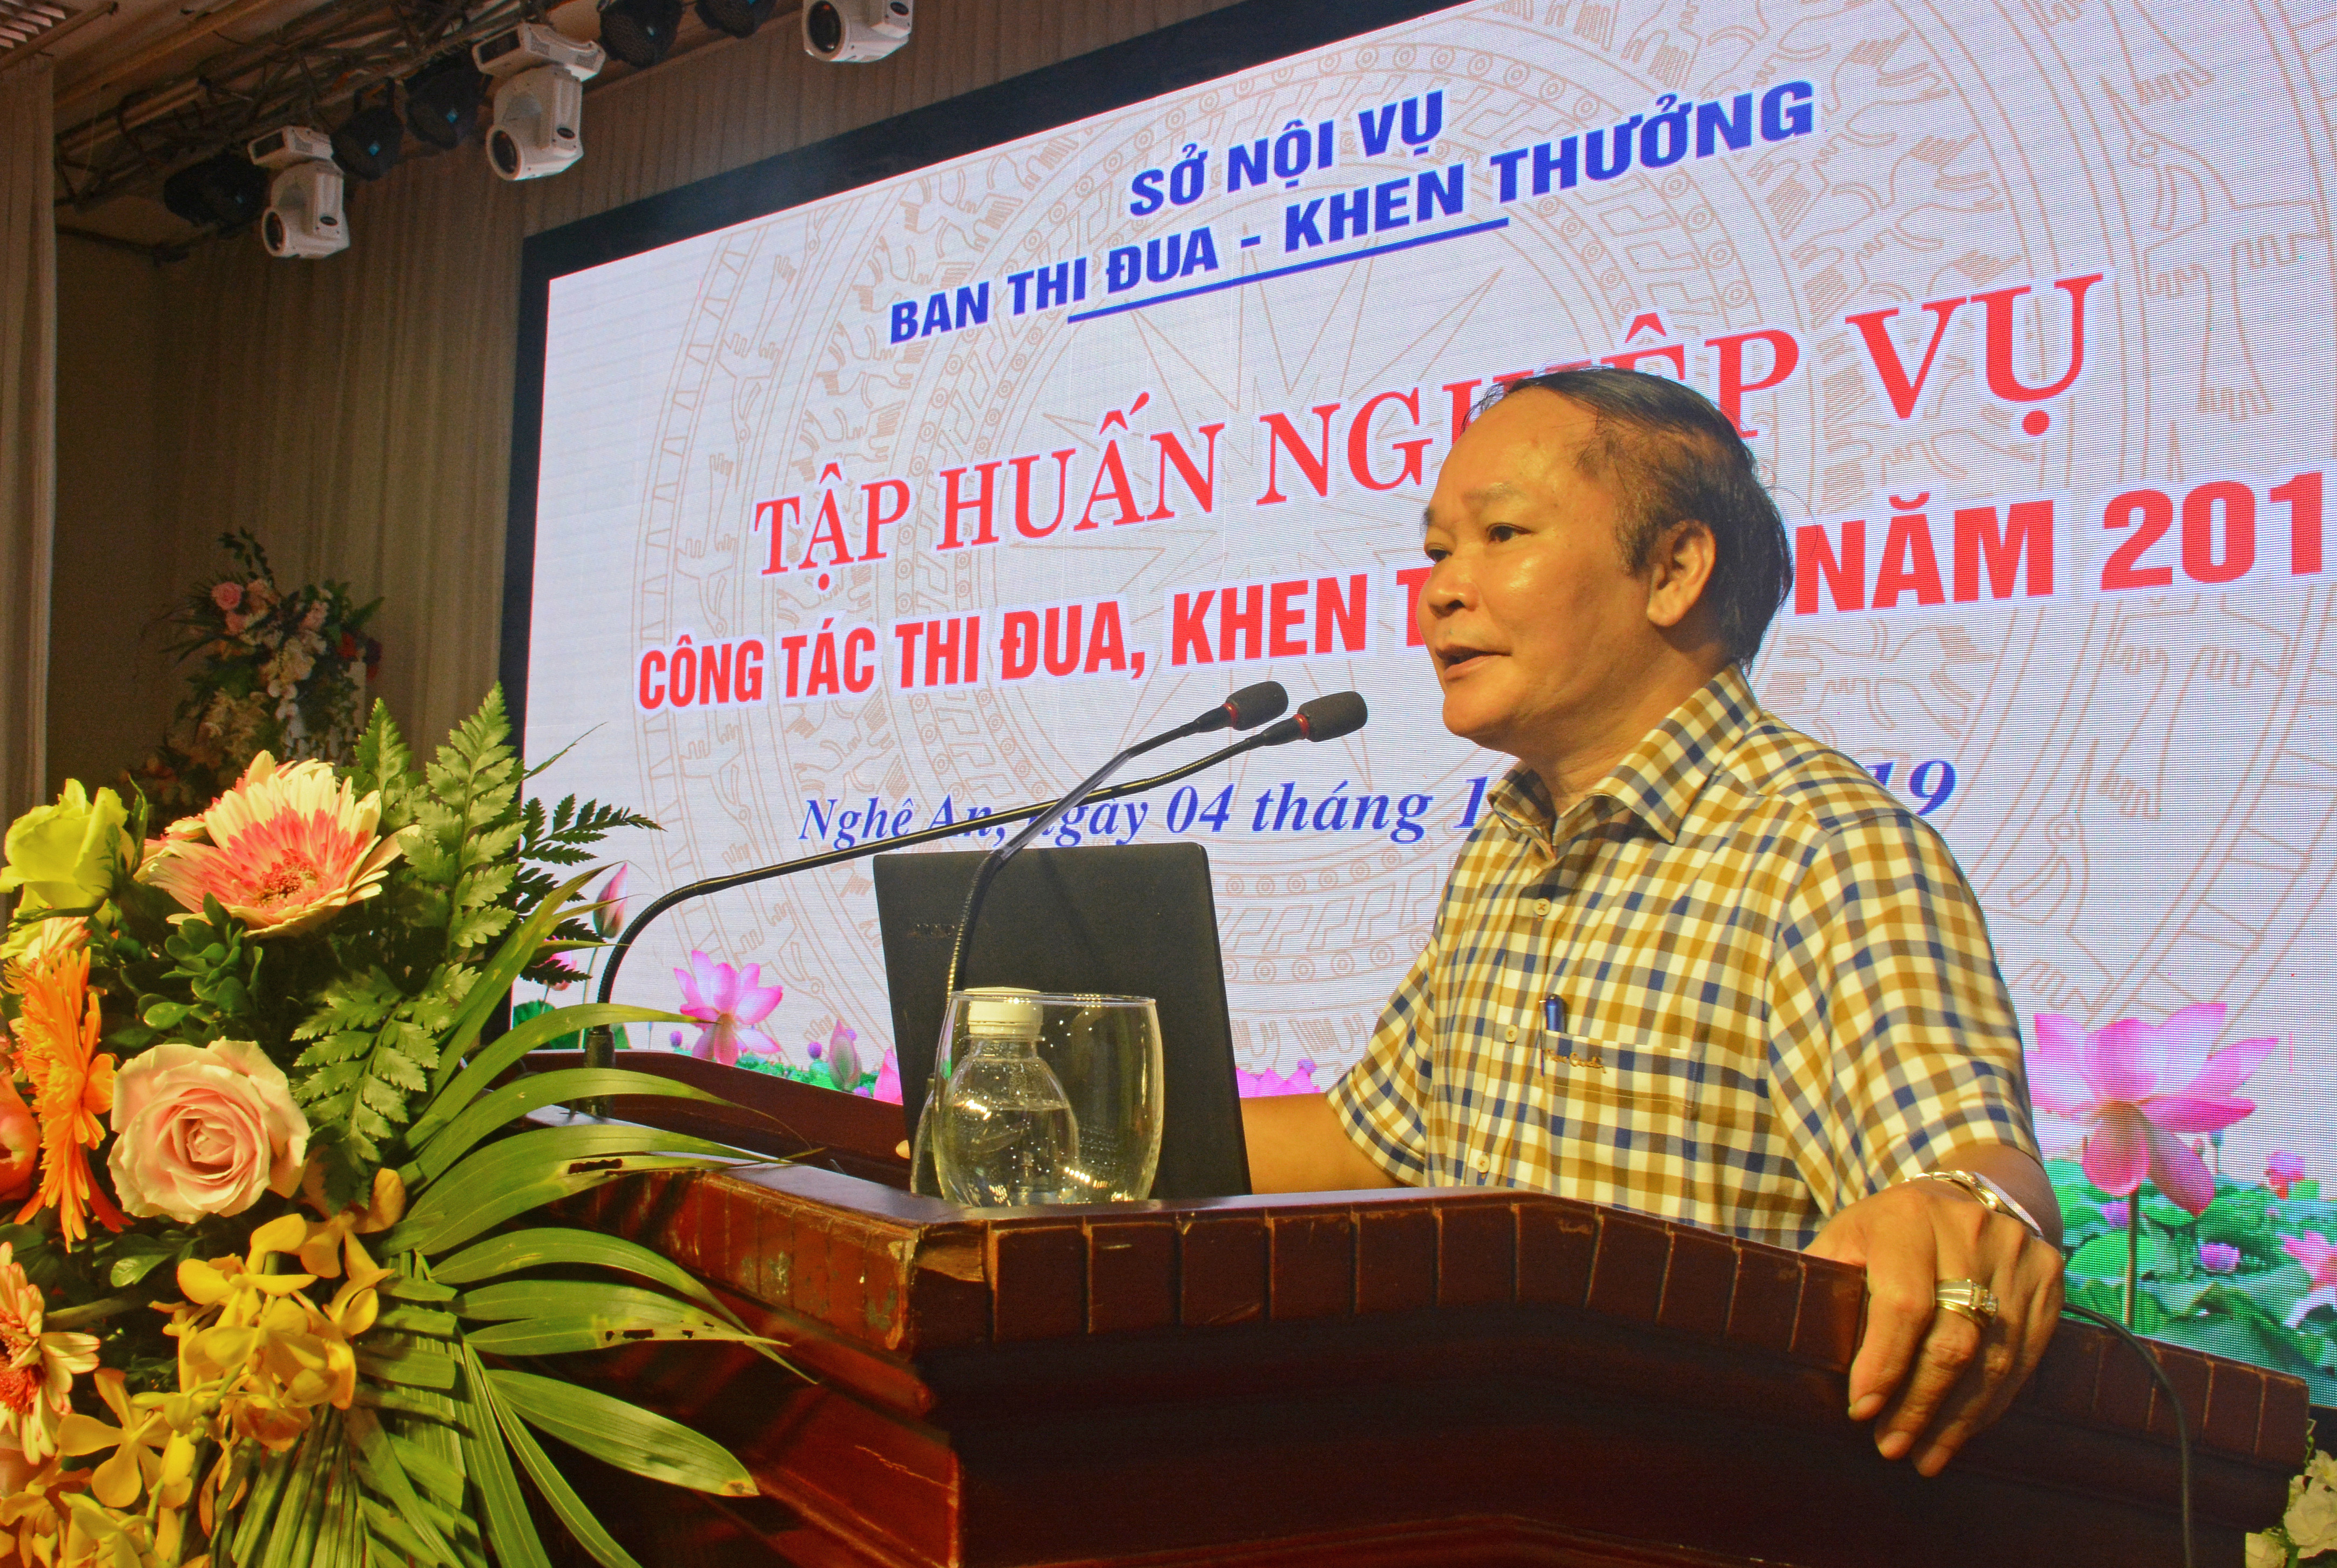 Đồng chí Nguyễn Thanh Nhàn - Trưởng ban Thi đua - Khen thưởng phát biểu khai mạc hội nghị tập huấn. Ảnh: Thu Giang